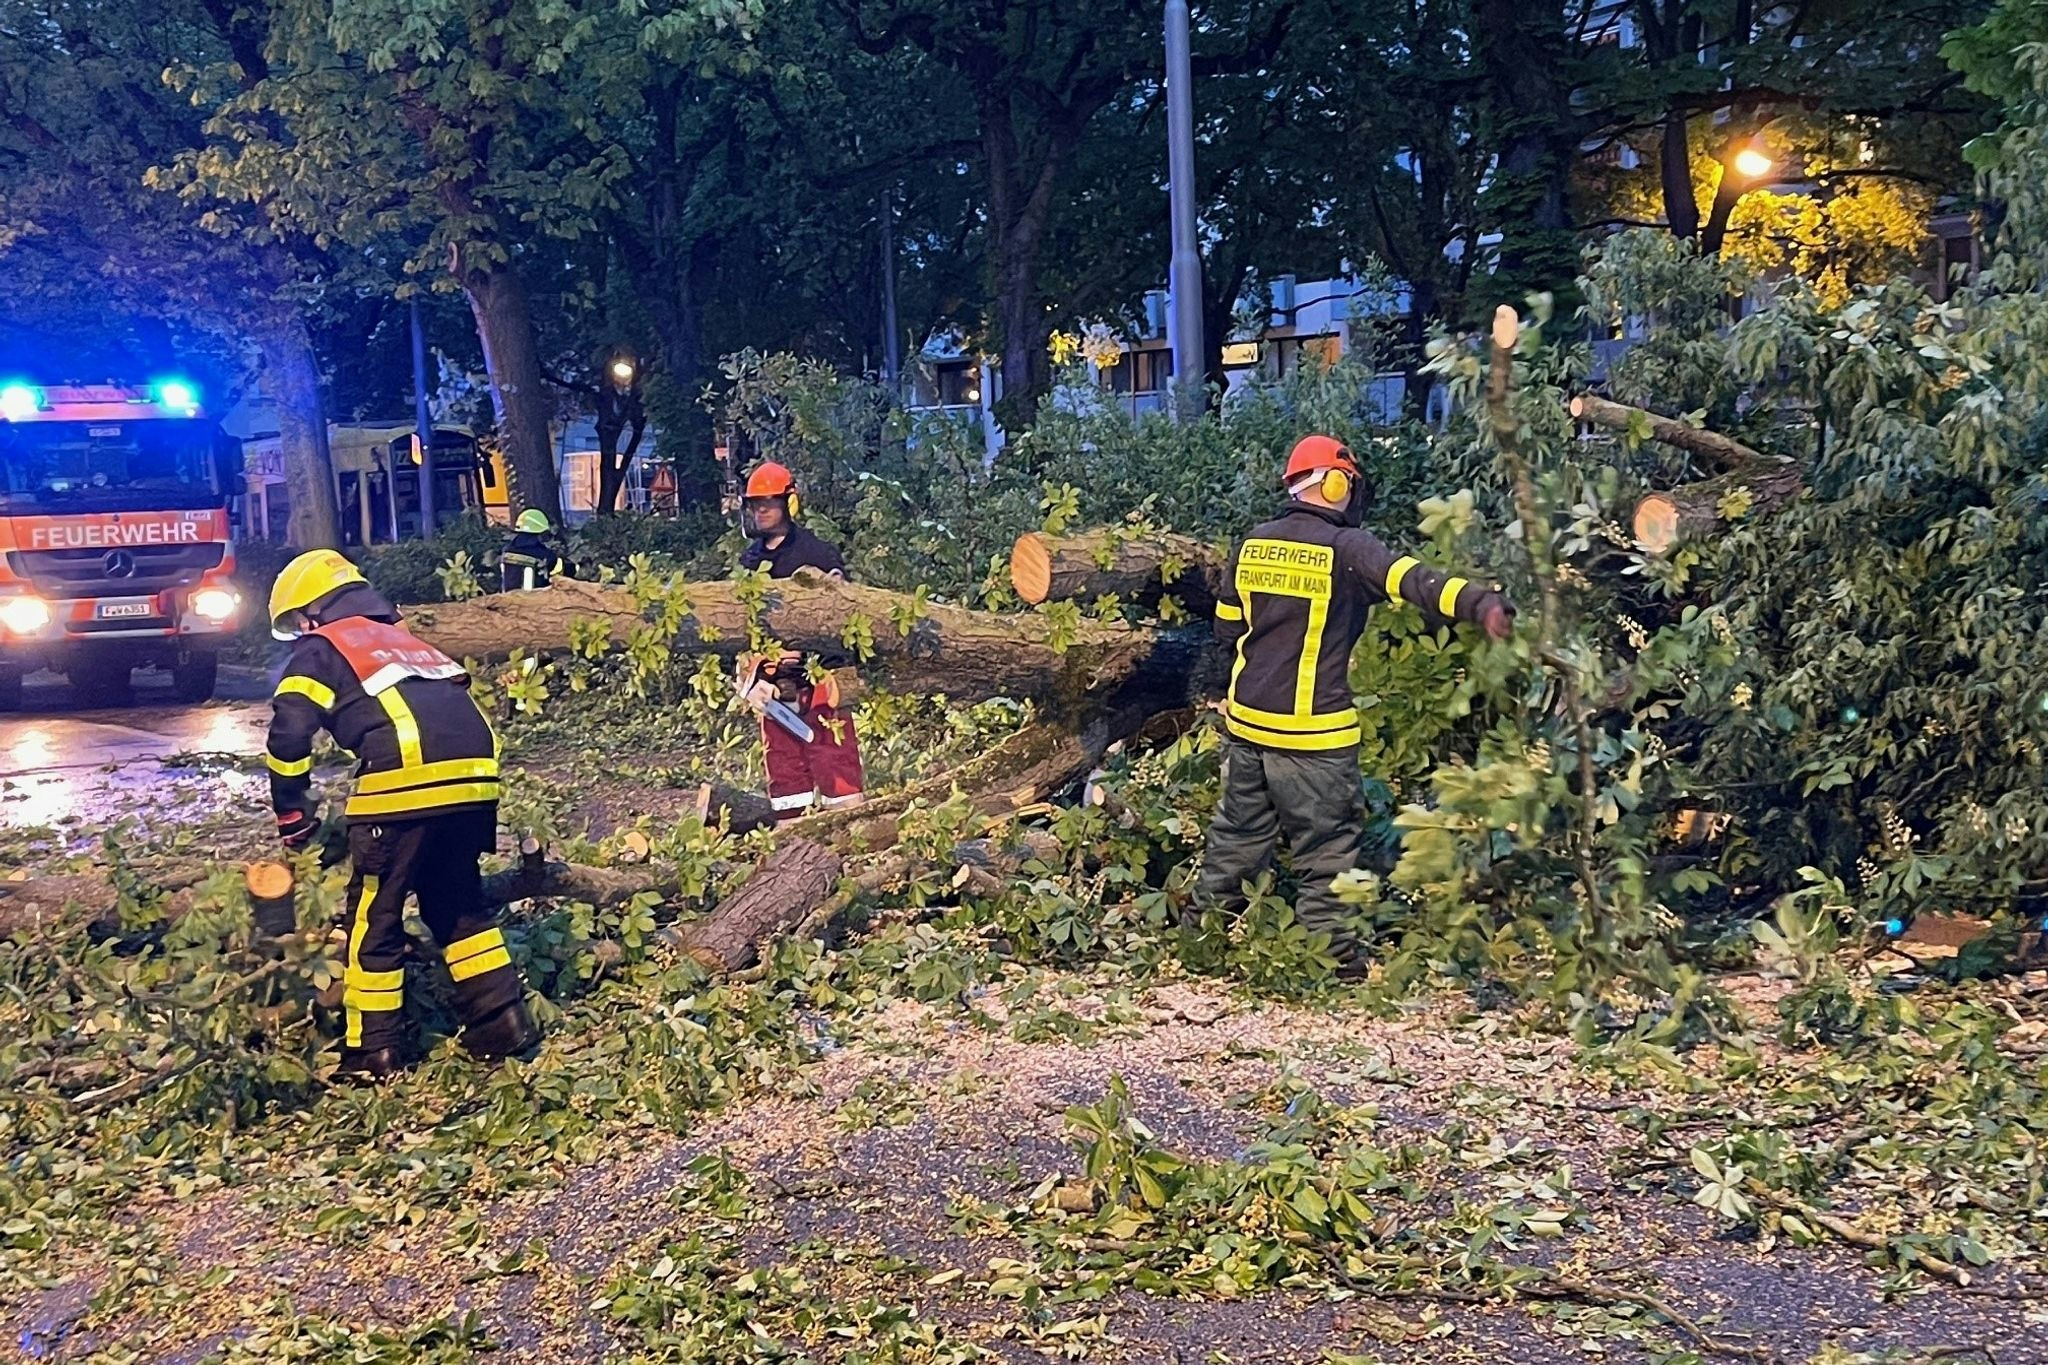 sturm über deutschland: unwetter in der nacht: passanten verletzt, züge verspätet